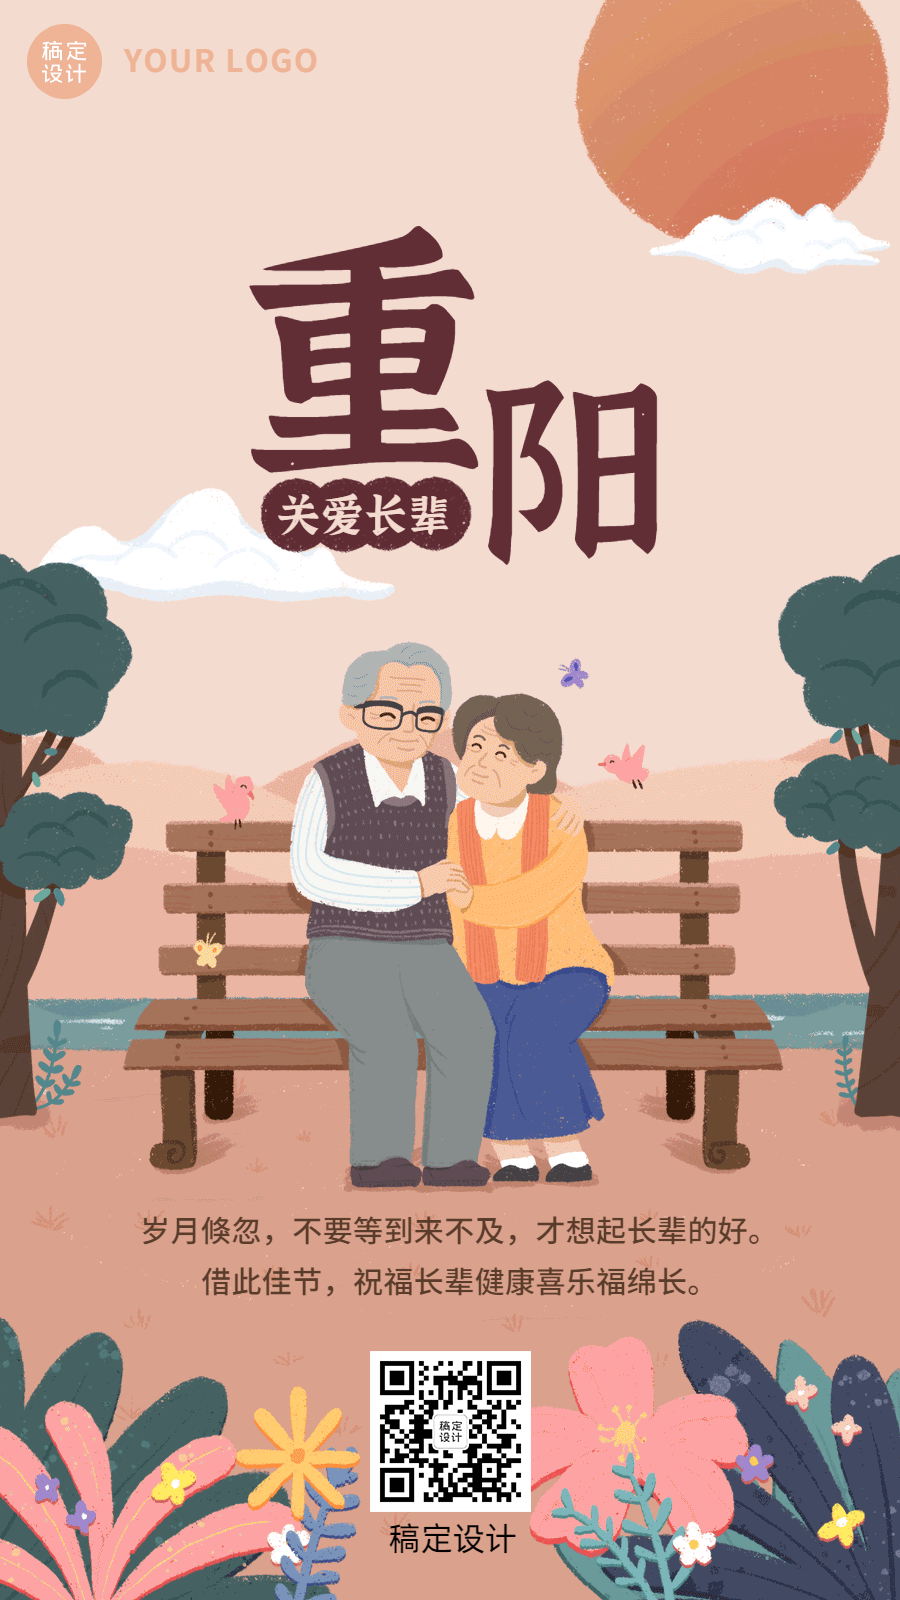 九九重阳节节日祝福插画动态海报公园座椅预览效果